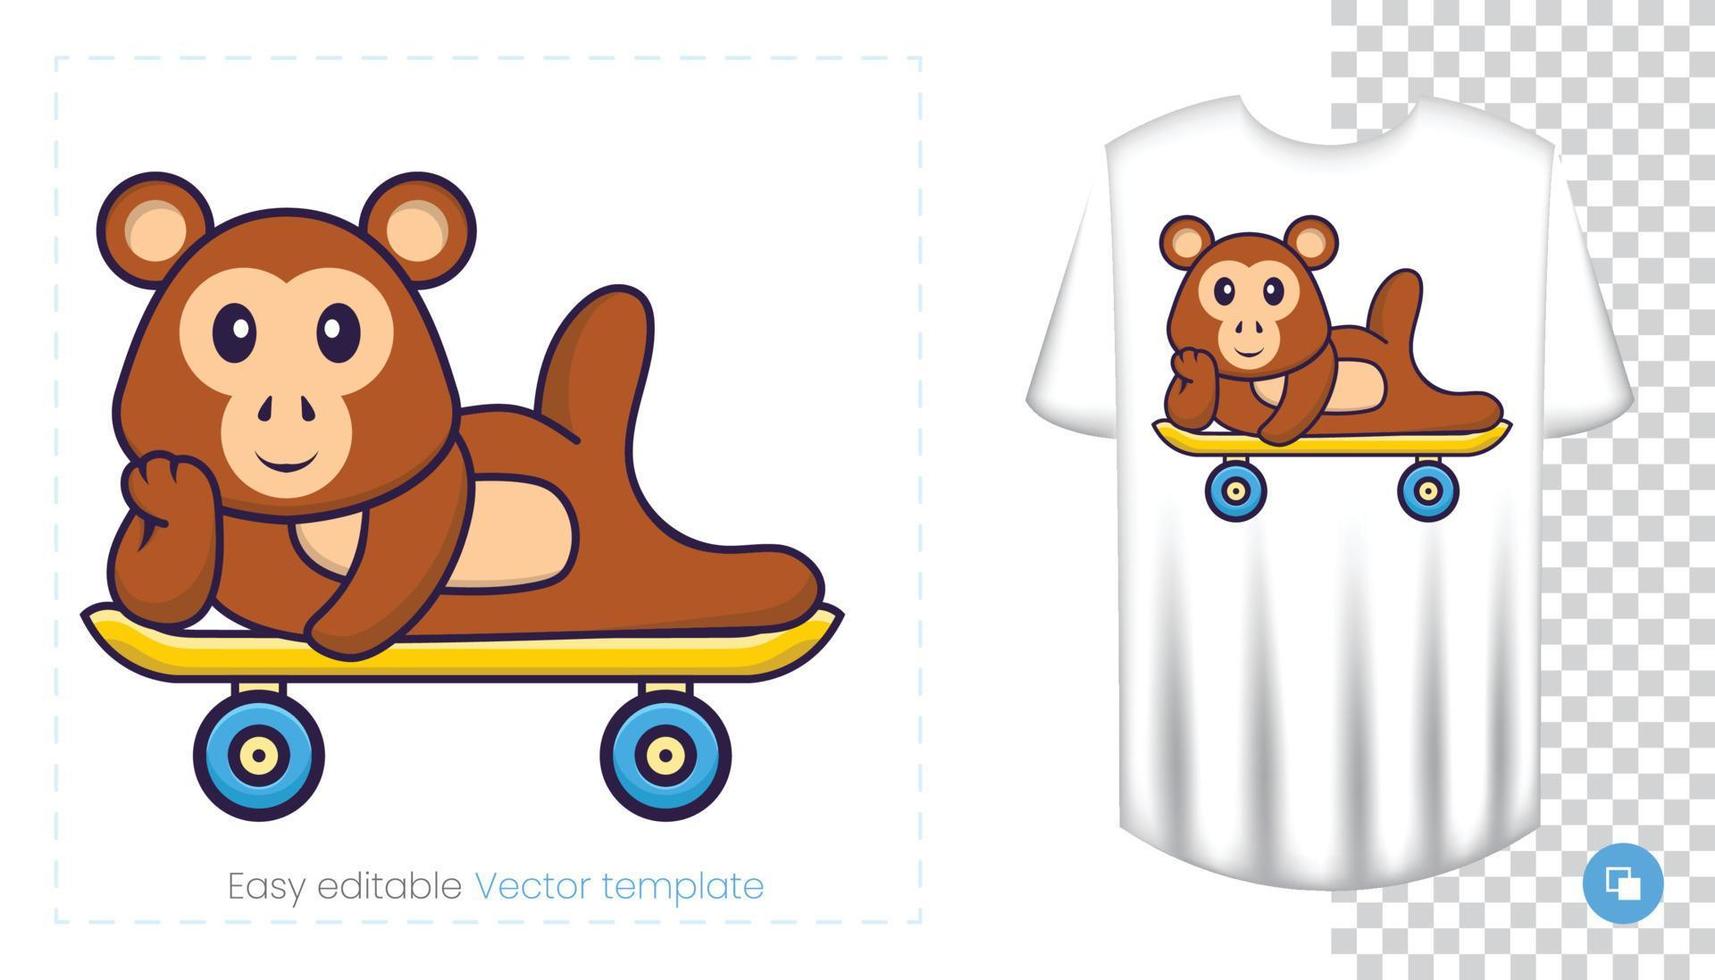 lindo personaje de mono. estampados en camisetas, sudaderas, fundas para móviles, souvenirs. Ilustración de vector aislado sobre fondo blanco.